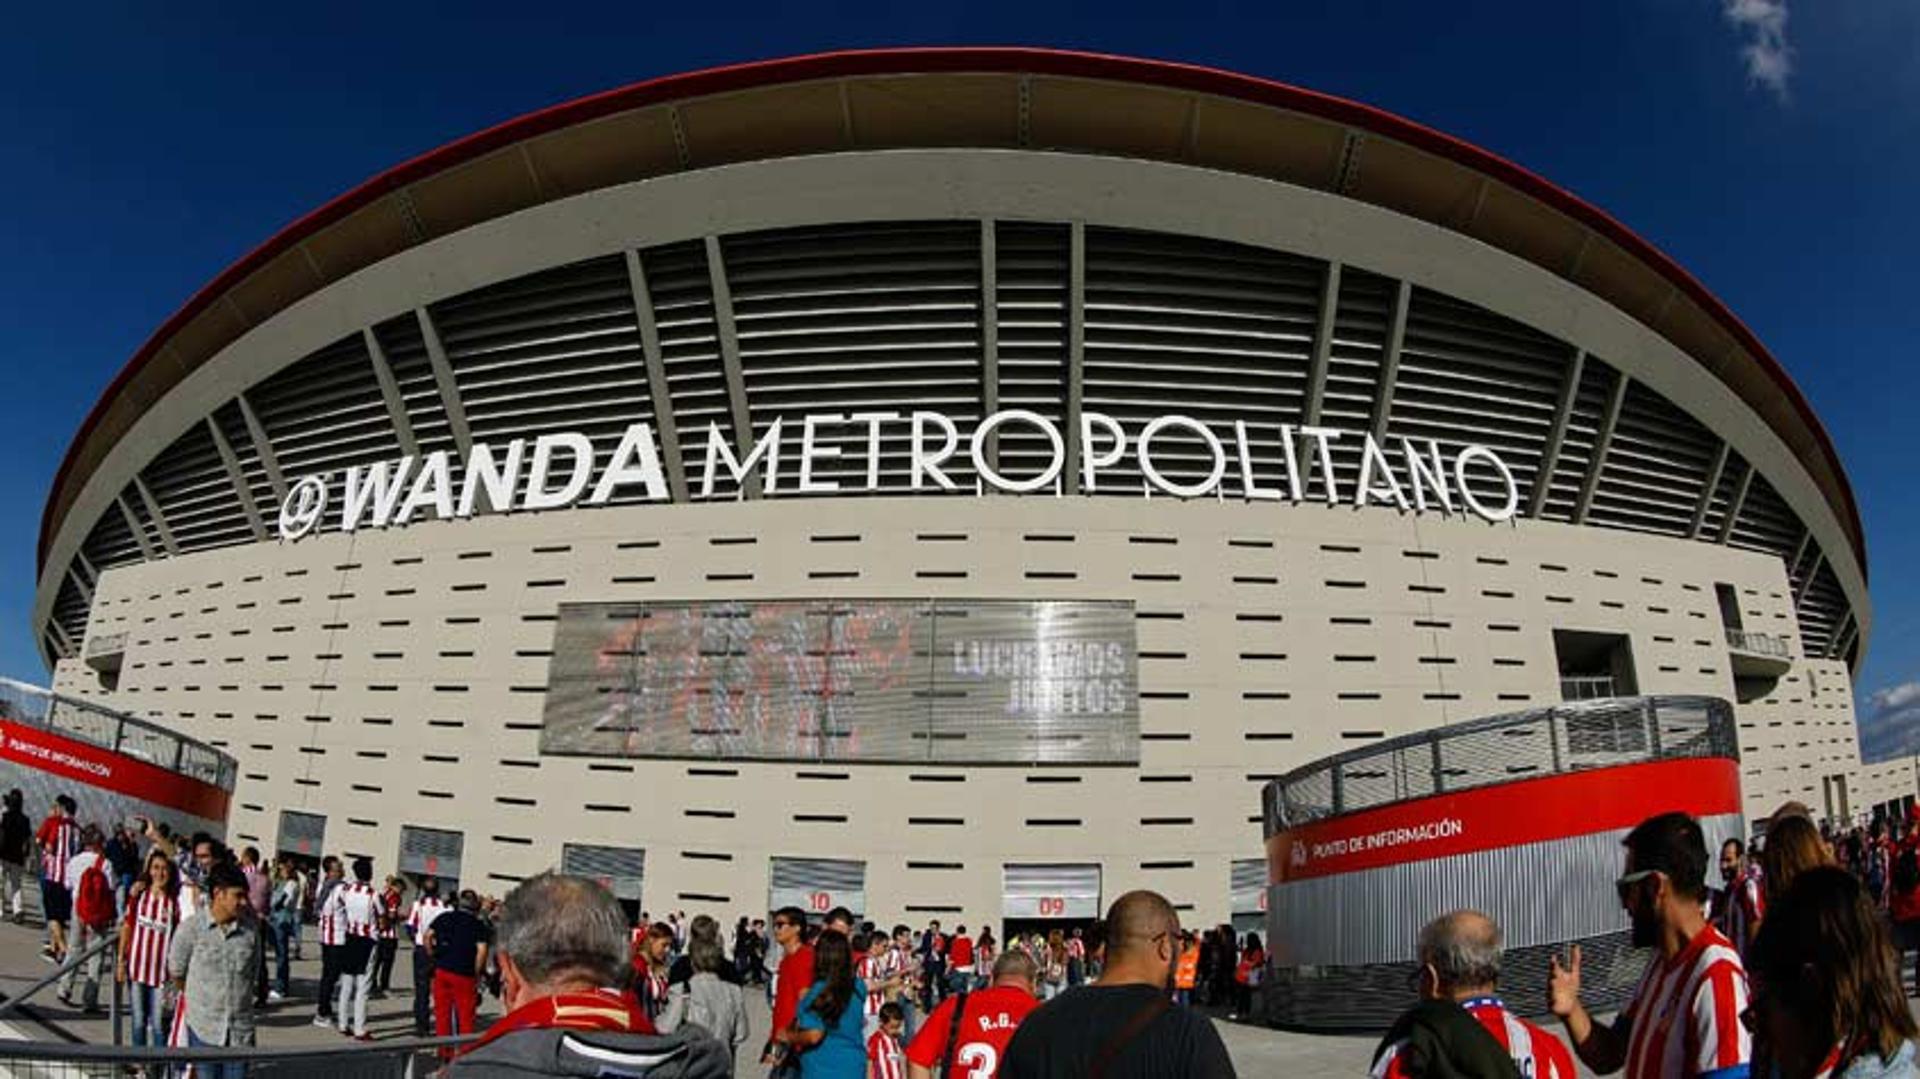 Com capacidade para cerca de 74 mil pessoas, o Wanda Metropolitano foi inaugurado e recebeu os torcedores colchoneros neste sábado. Em campo, o Atlético de Madrid venceu o Málaga.<br>